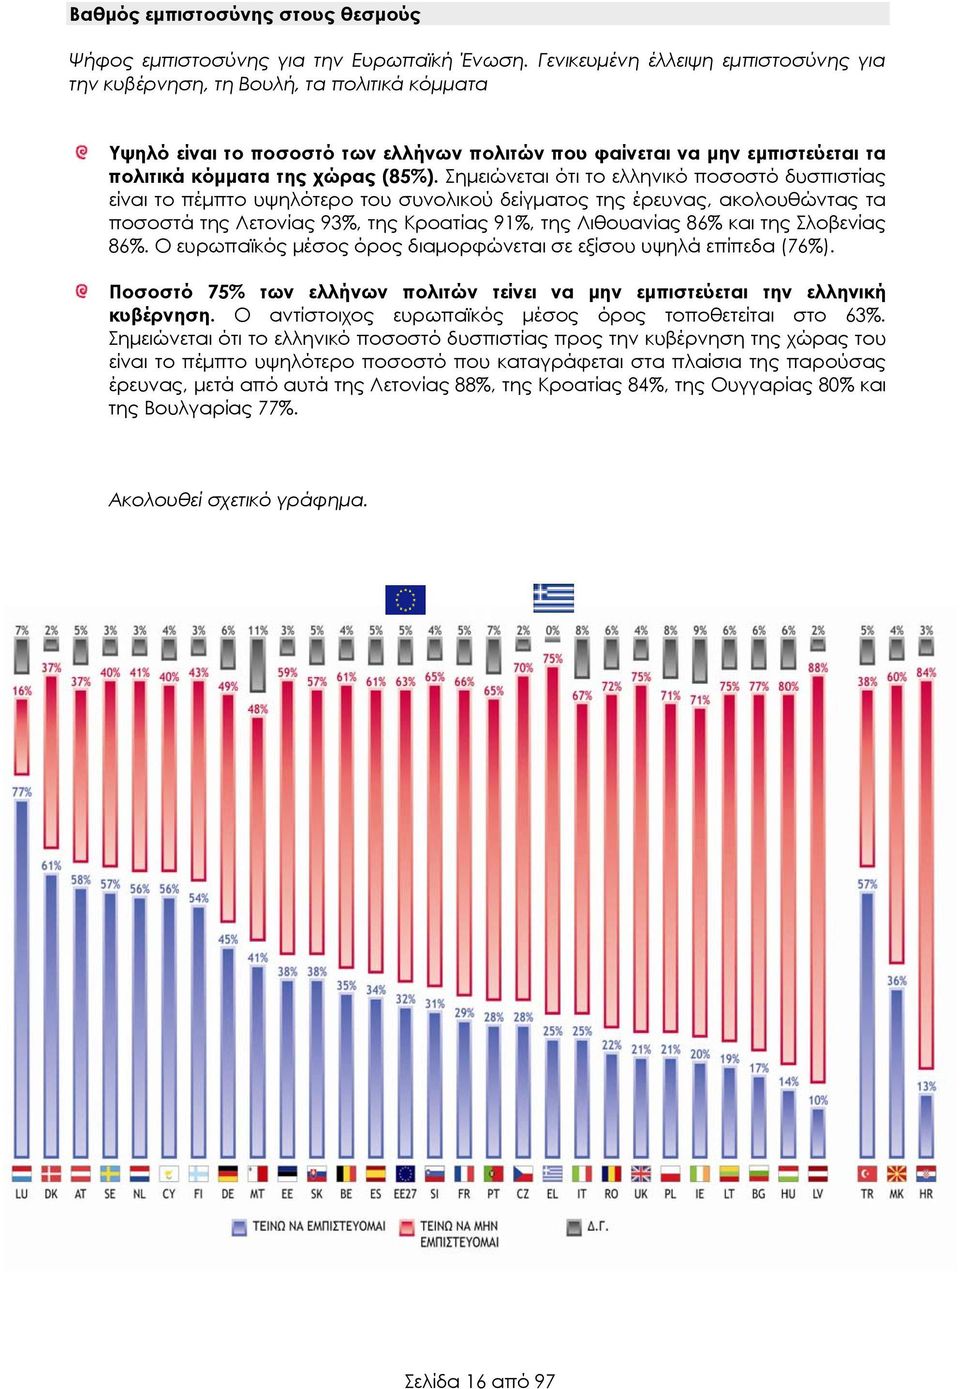 Σημειώνεται ότι το ελληνικό ποσοστό δυσπιστίας είναι το πέμπτο υψηλότερο του συνολικού δείγματος της έρευνας, ακολουθώντας τα ποσοστά της Λετονίας 93%, της Κροατίας 91%, της Λιθουανίας 86% και της